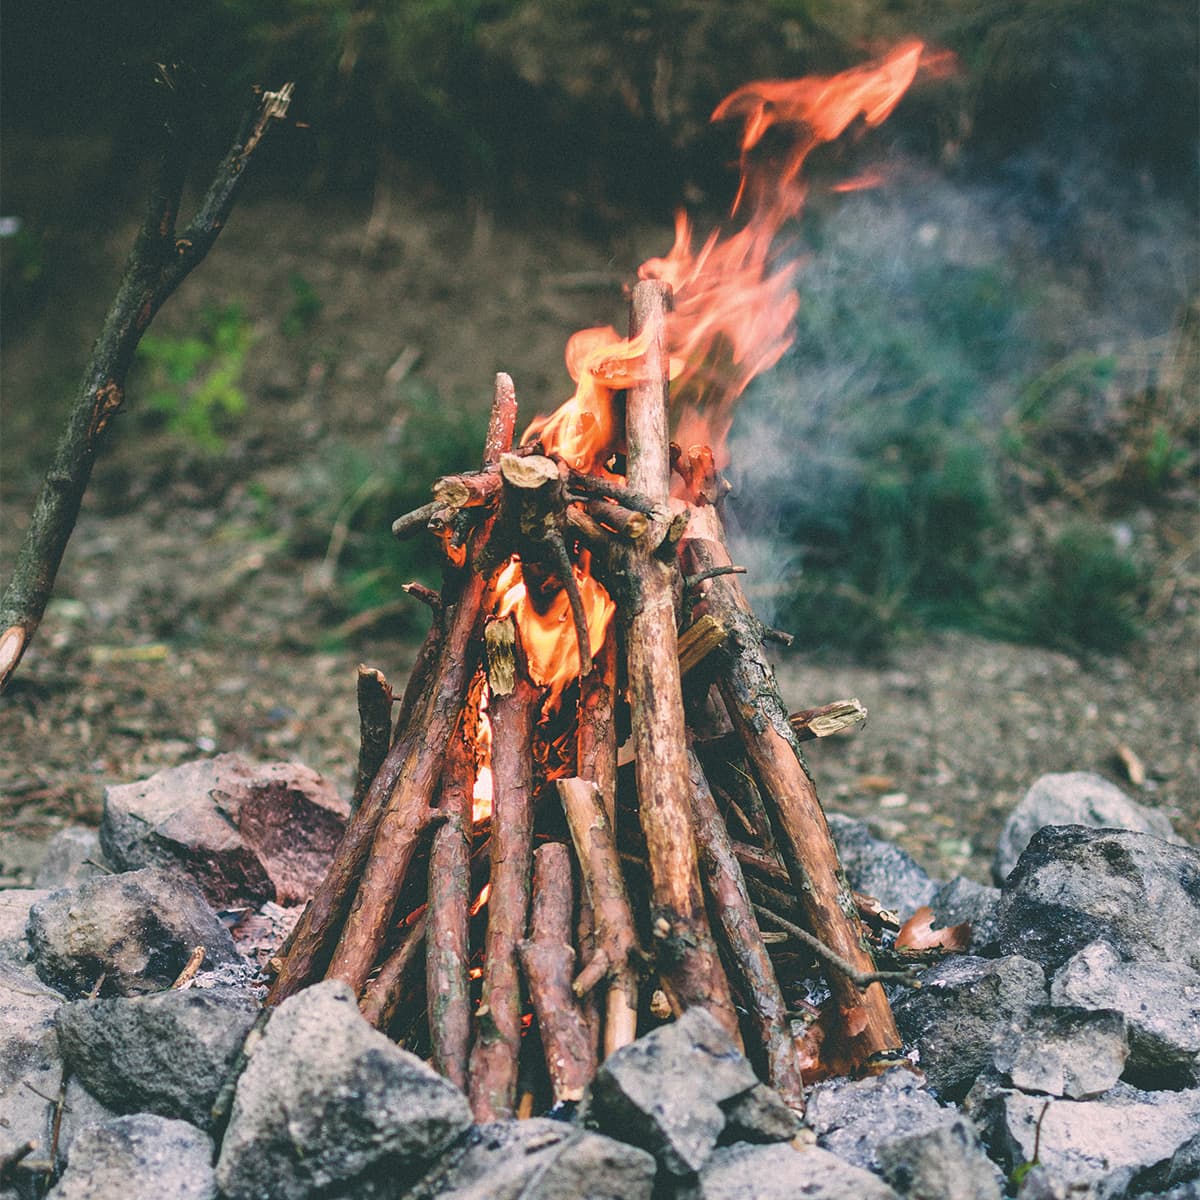 Campfire teepee method